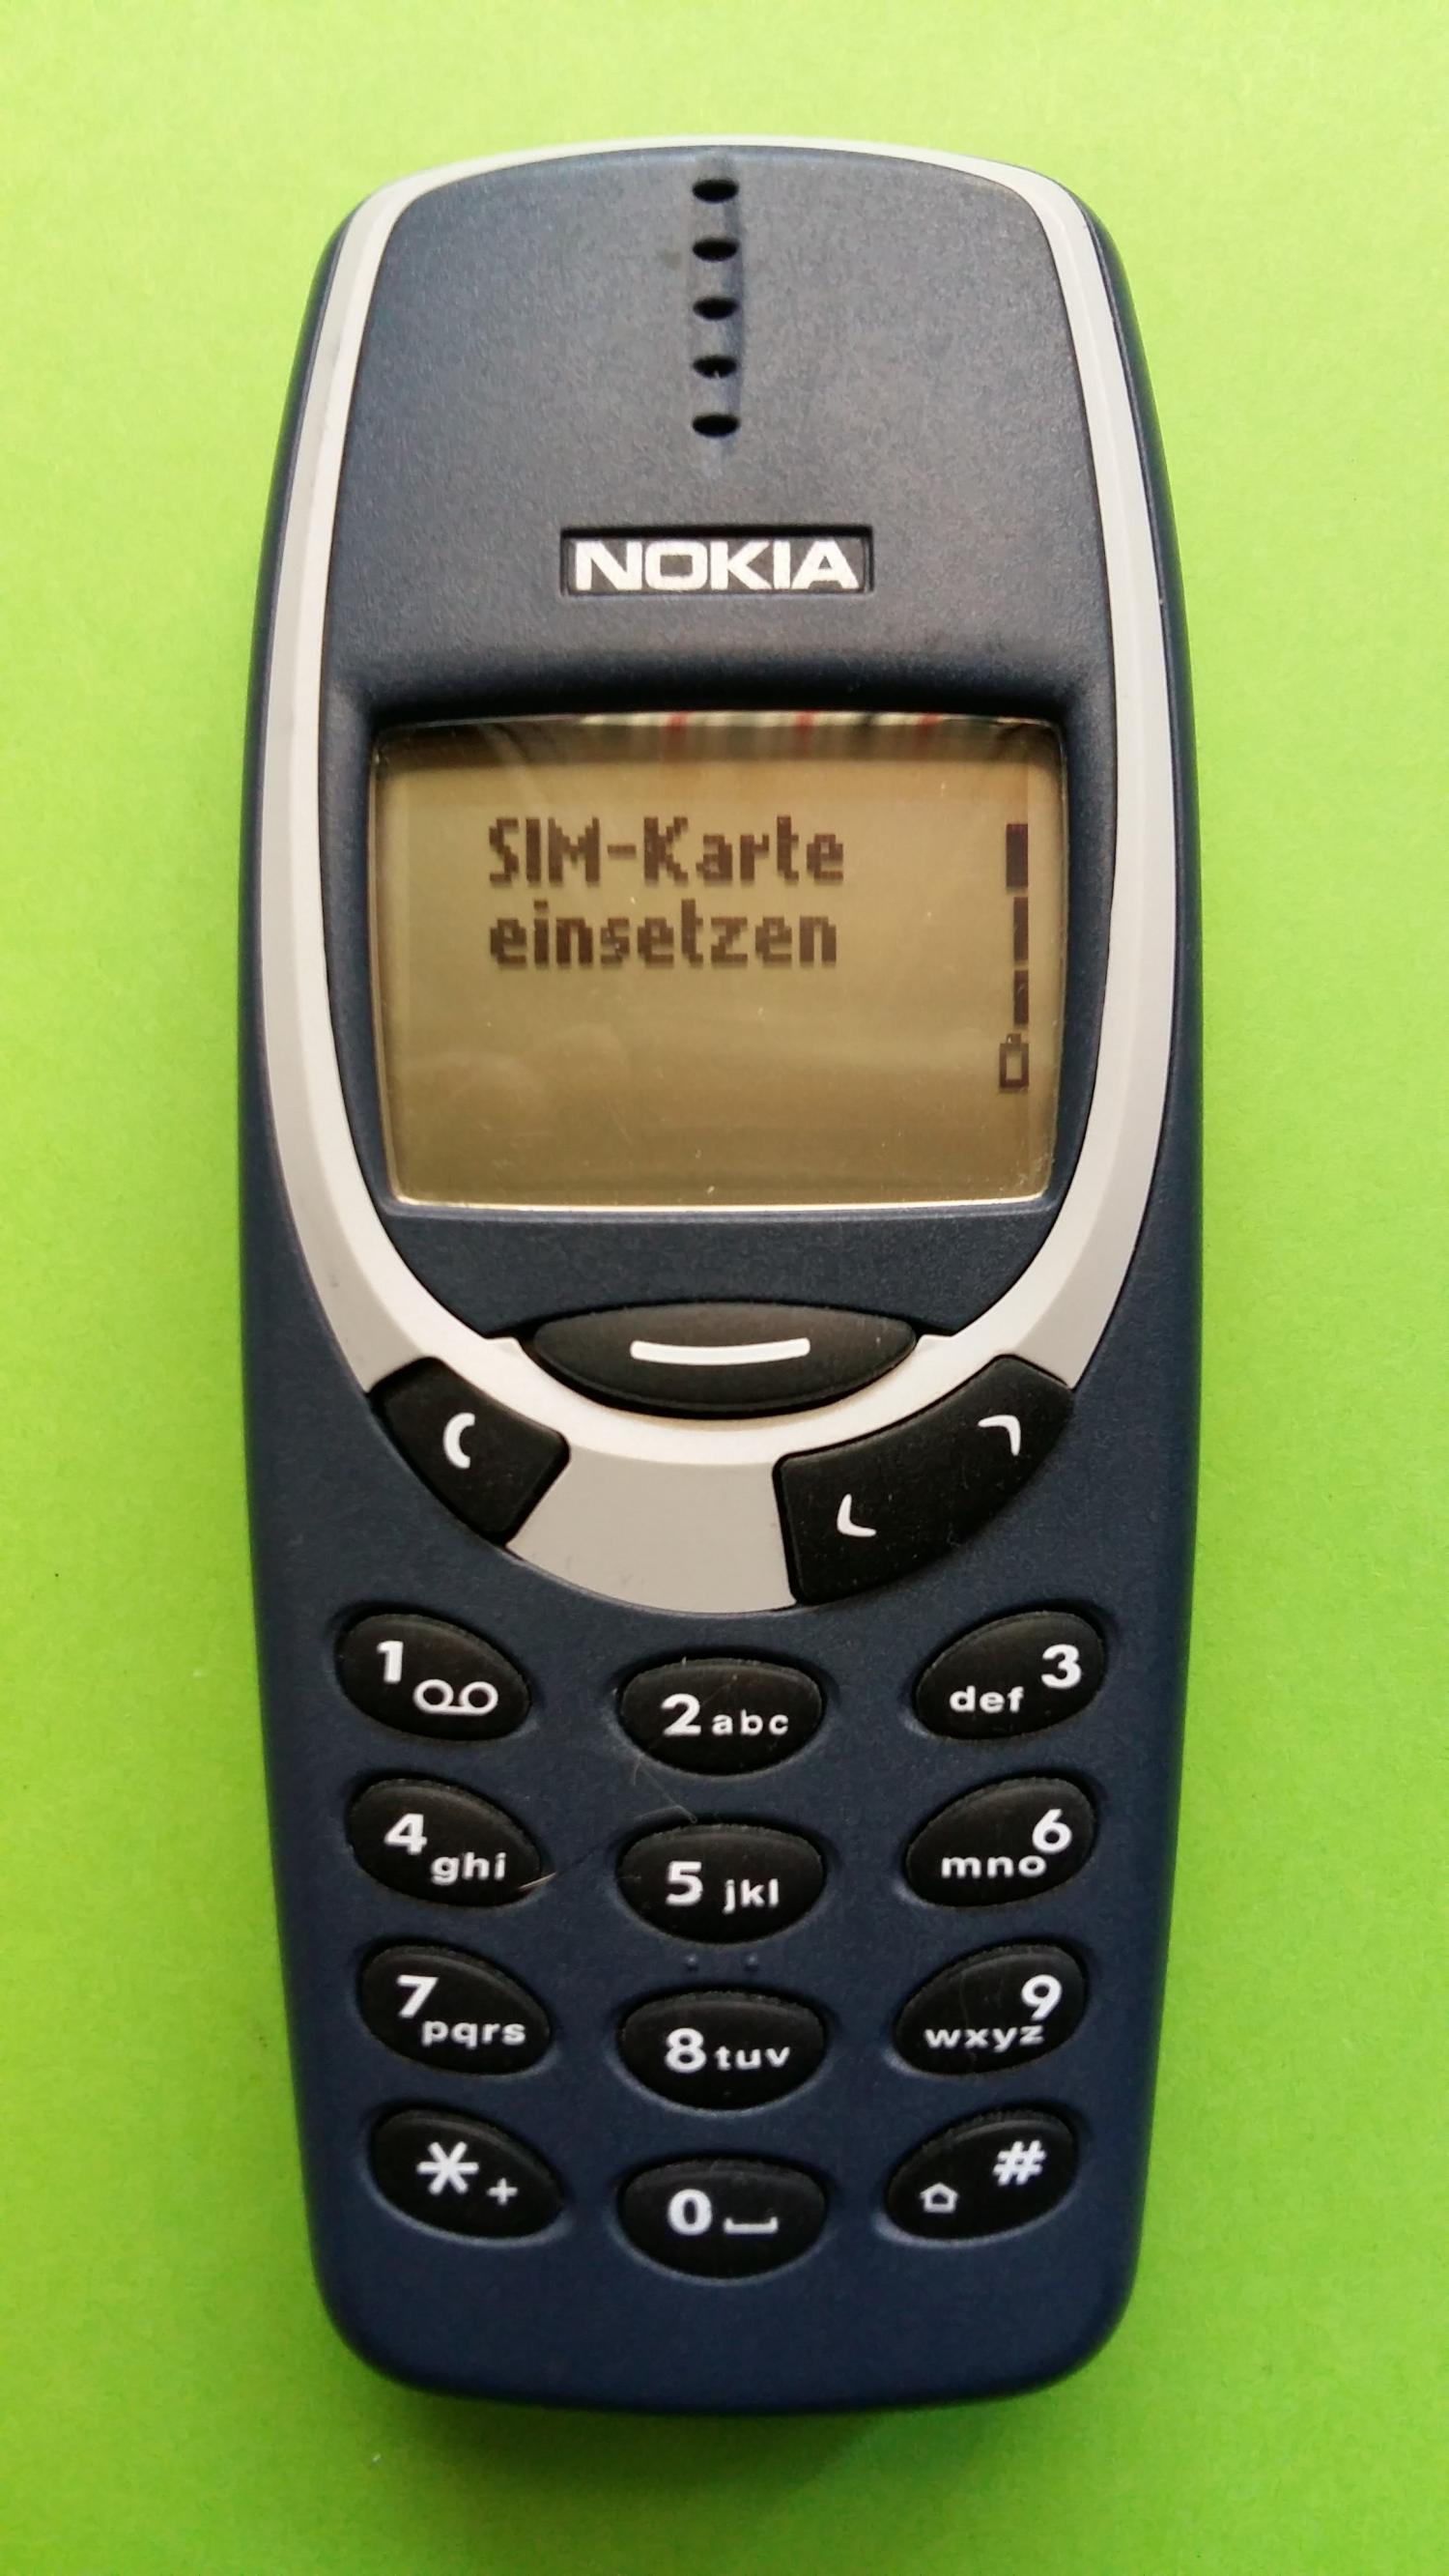 image-7313221-Nokia 3330 (6)1.jpg